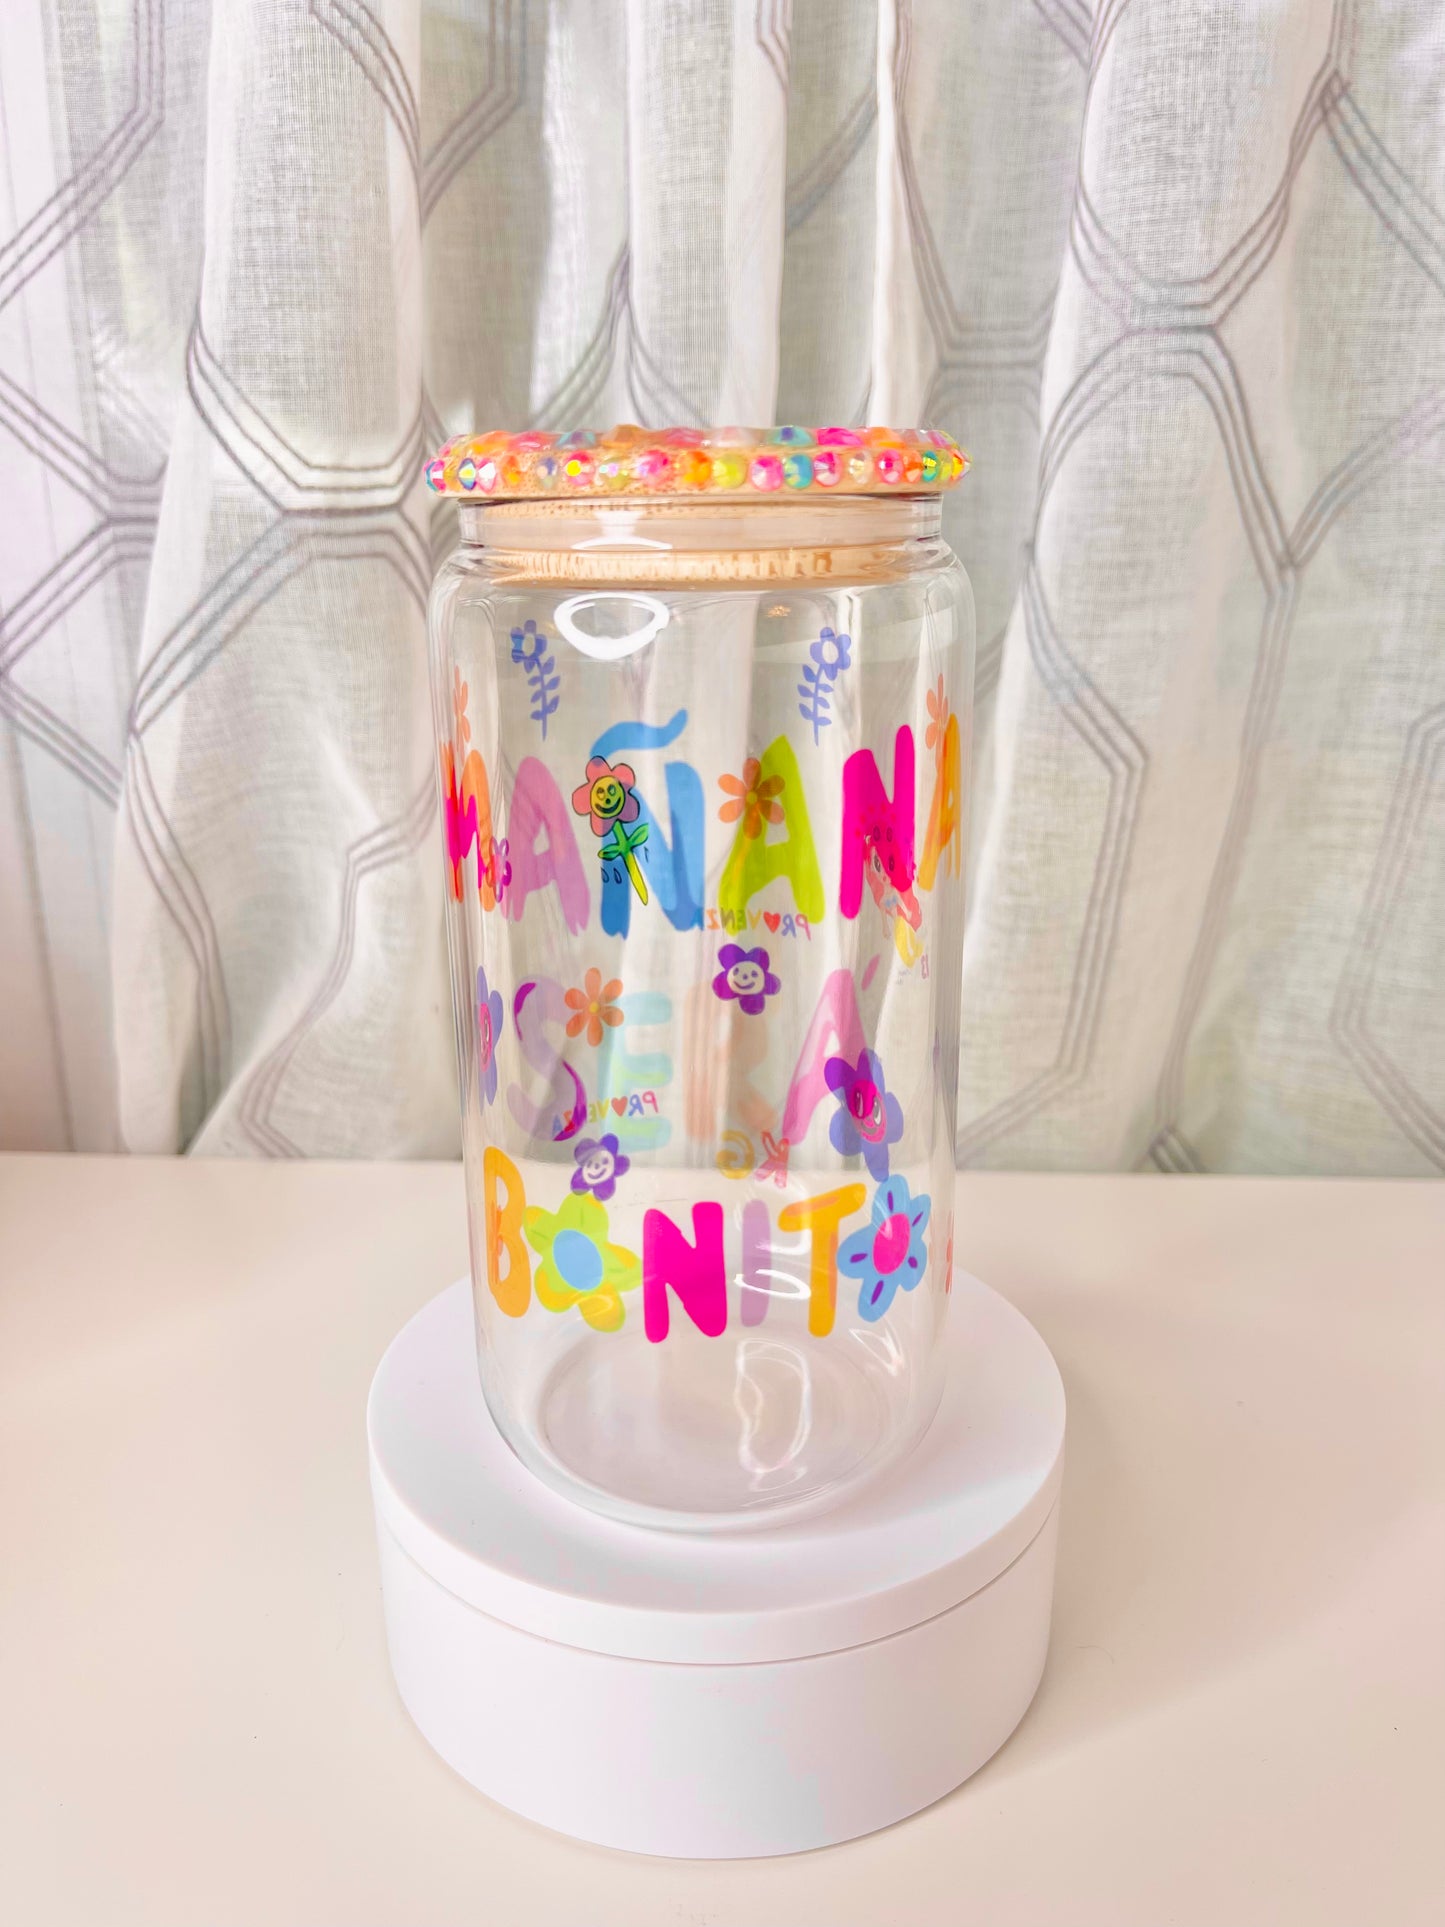 Karol G Bonito Glass cup | Cute Manana Sera Bonito frosted or clear glass cup| Karol G fans glass cup|